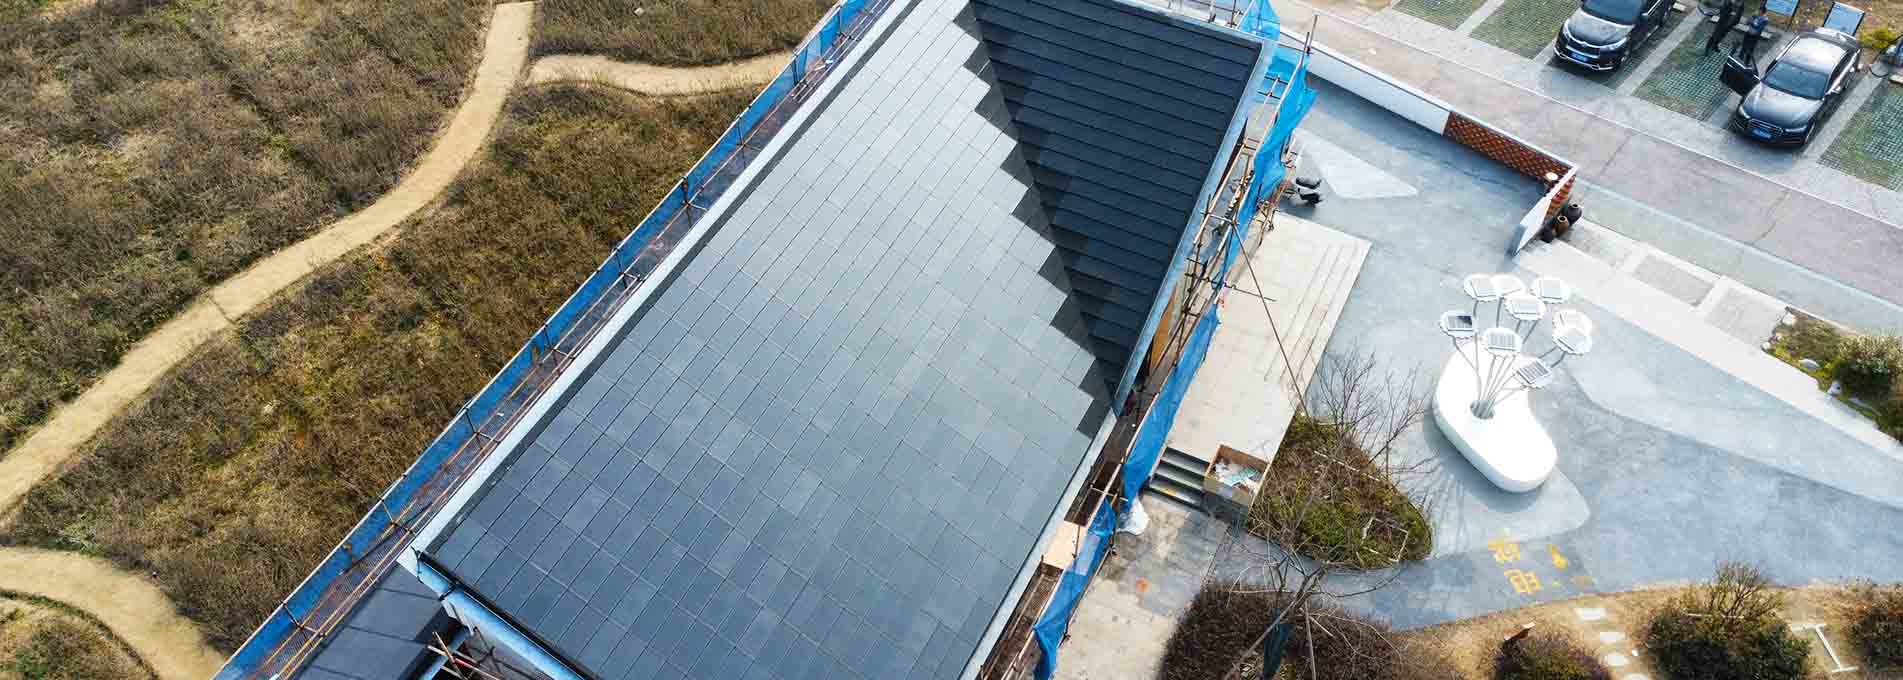 태양광 패널 지붕 타일